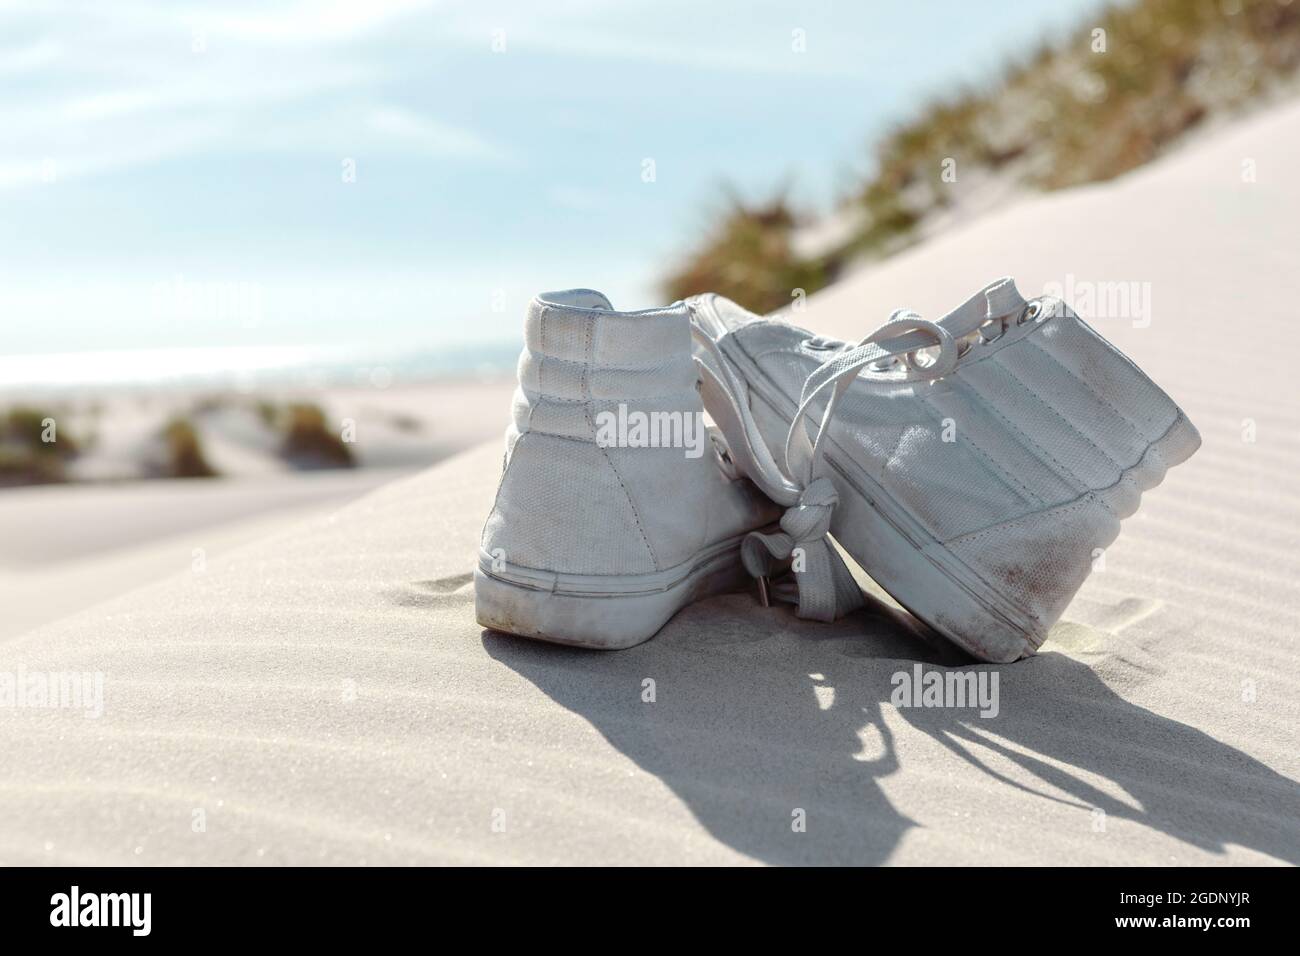 Ein paar weiße Sneakers am Strand auf Sand gelassen. Dünen mit grünem Gras Vegetation. Sommerurlaub, Urlaub am Meer Konzept. Stockfoto